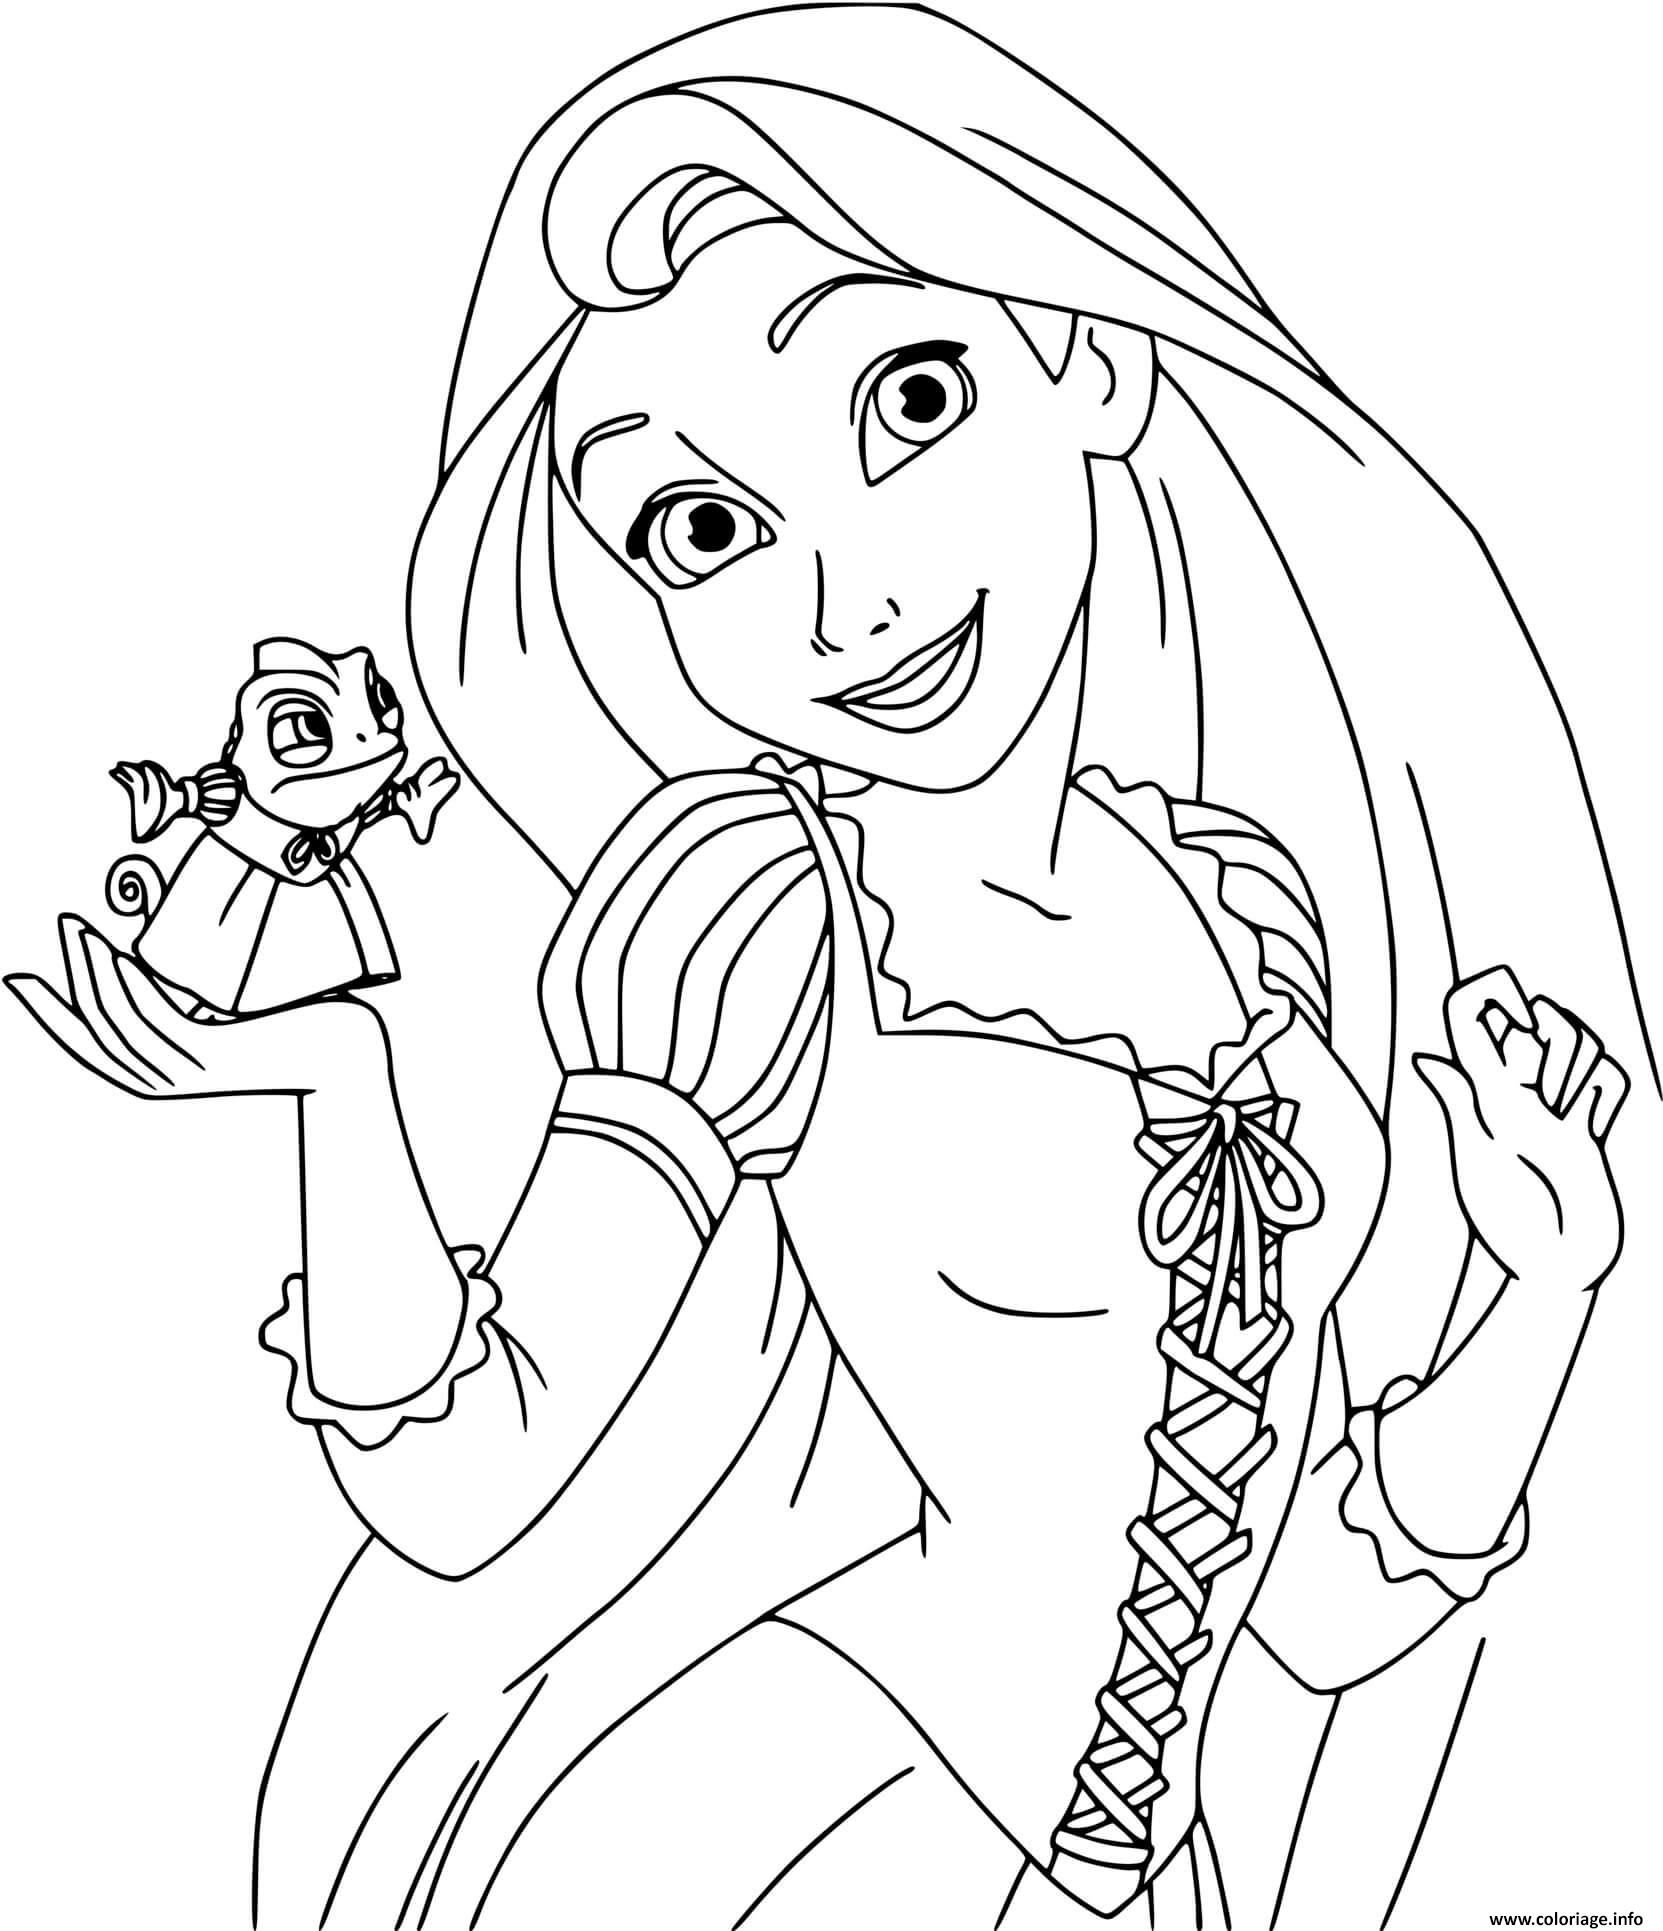 Dessin La princesse Raiponce Rapunzel du conte Raiponce des freres Grimm Coloriage Gratuit à Imprimer